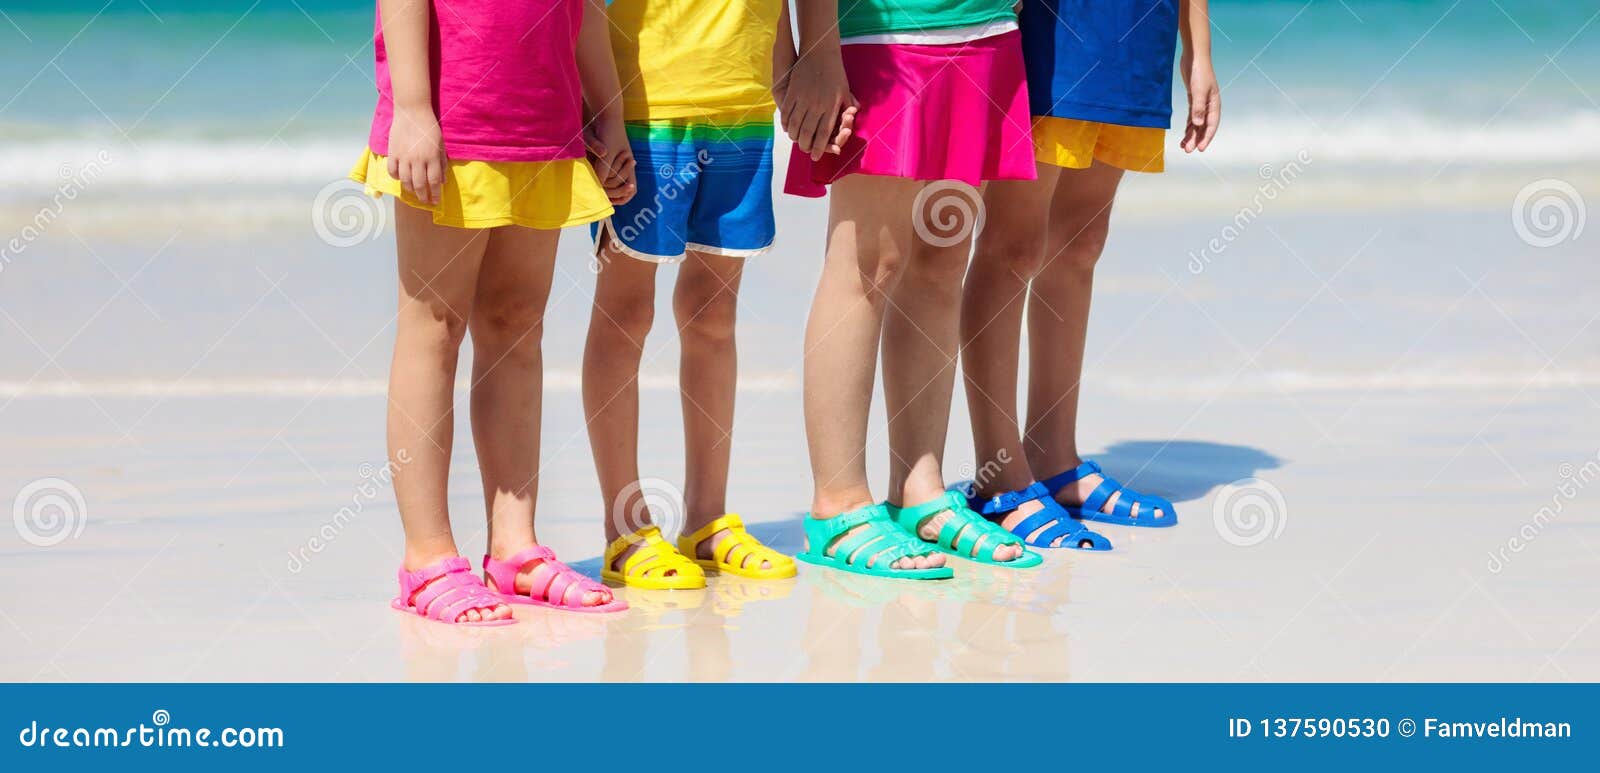 Zapatos De La Playa De Los Niños Calzado Del Mar Del Verano De Los Niños Foto de archivo - Imagen de arena, familia: